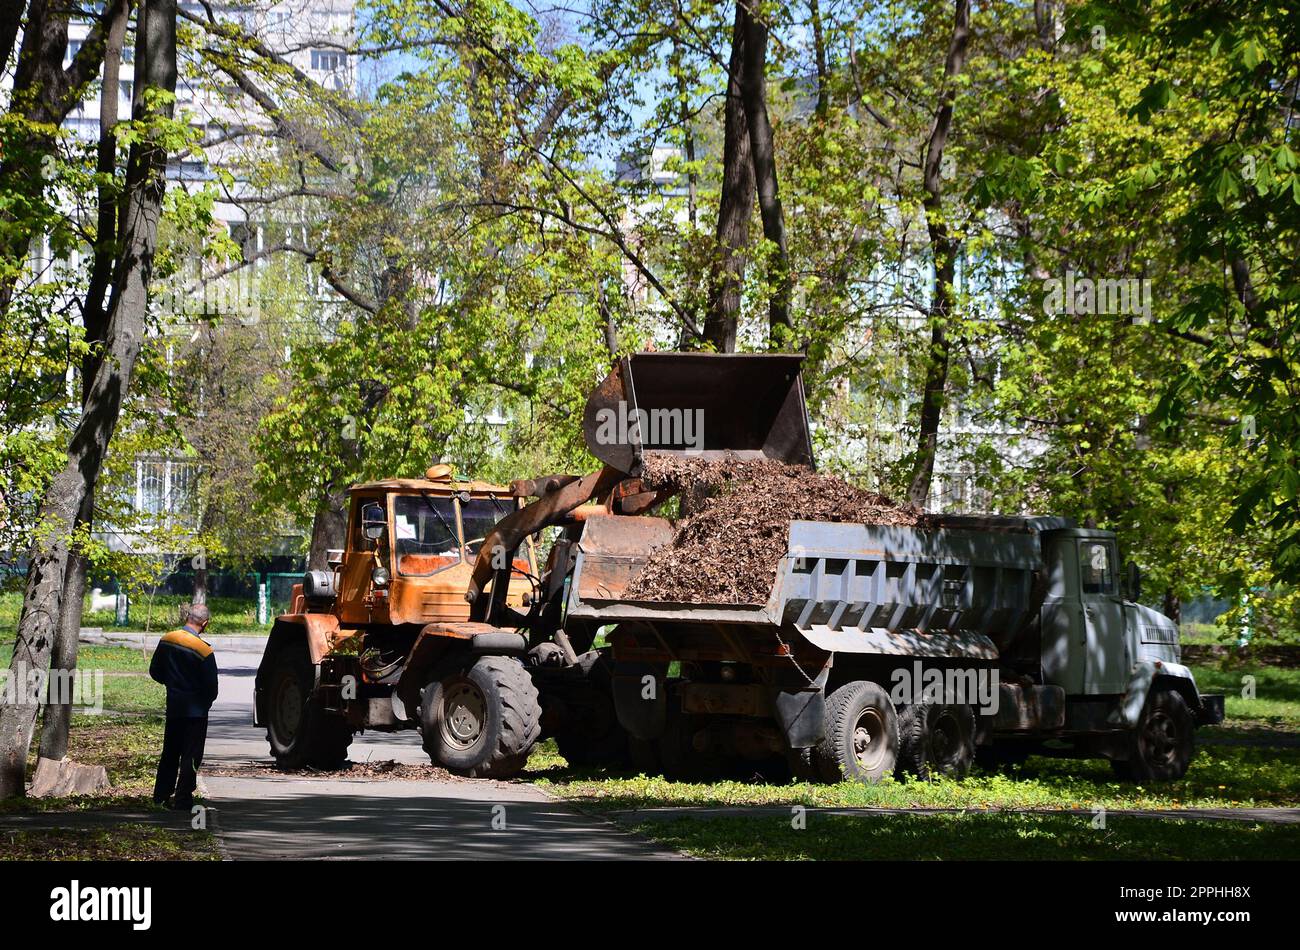 L'équipe d'amélioration de la ville retire les feuilles tombées dans le parc avec une pelle hydraulique et un camion. Travail saisonnier régulier sur l'amélioration des lieux publics de loisirs Banque D'Images